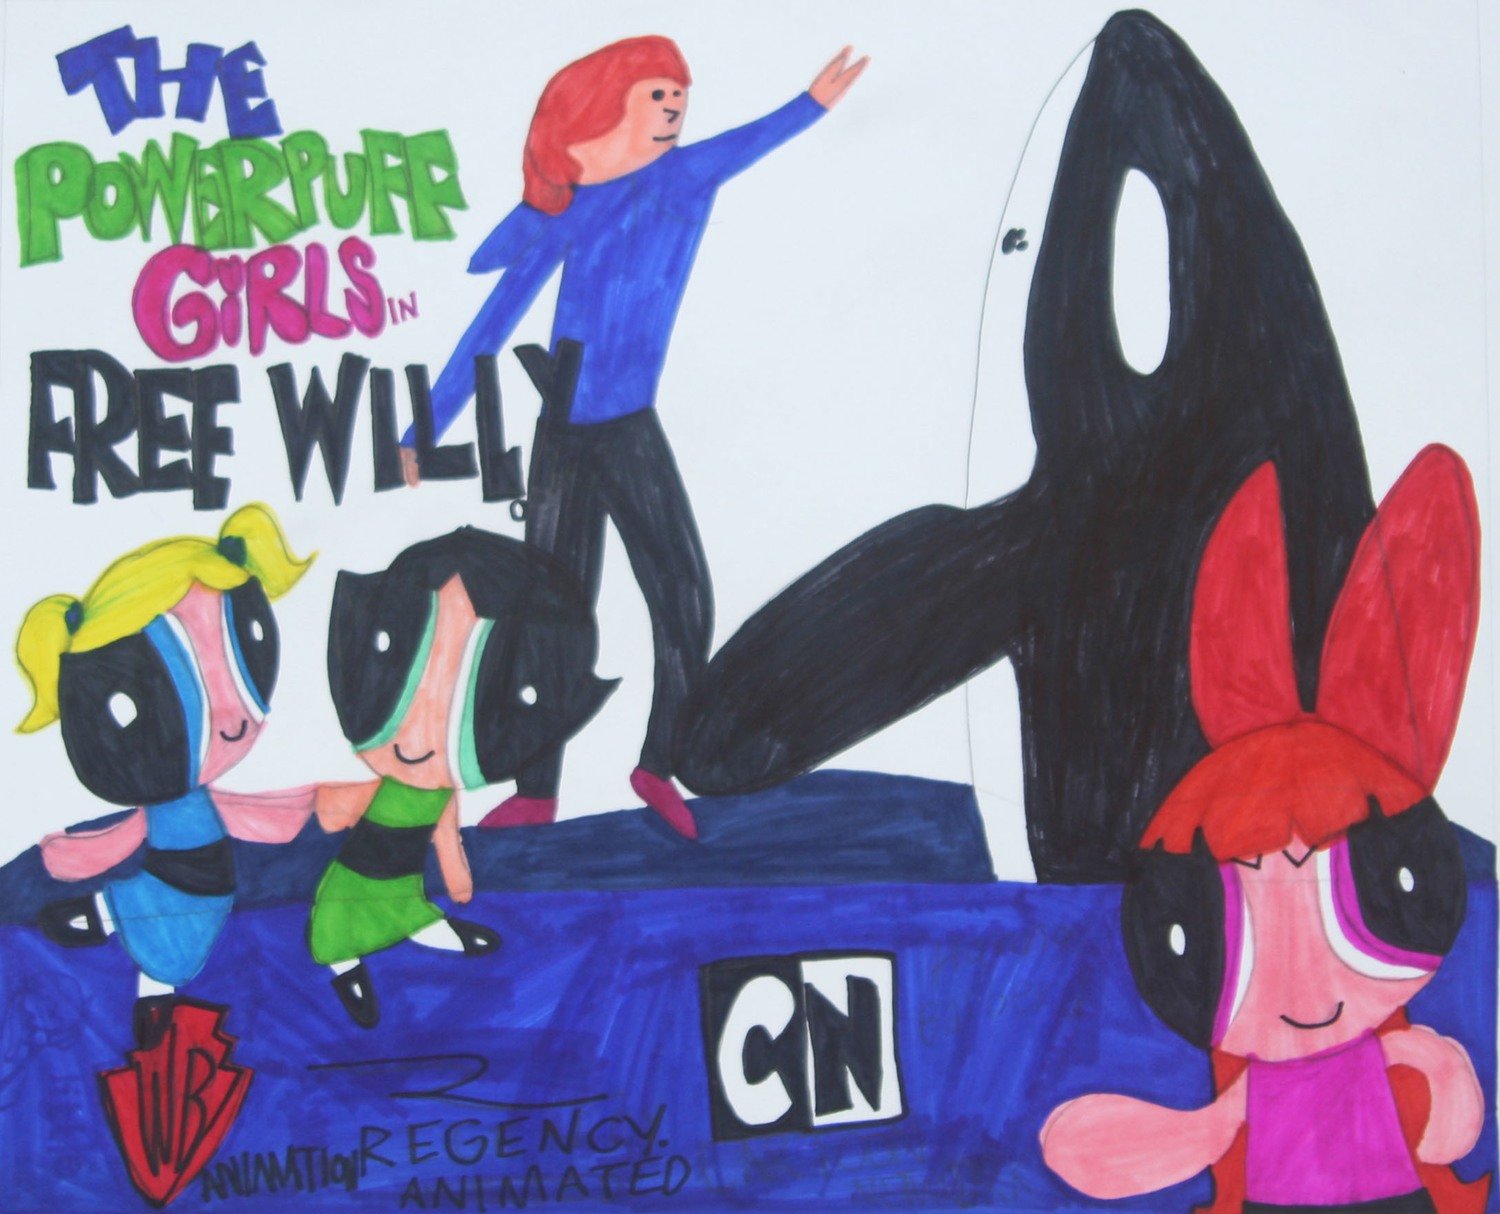 Powerpuff Girls: Free Willy